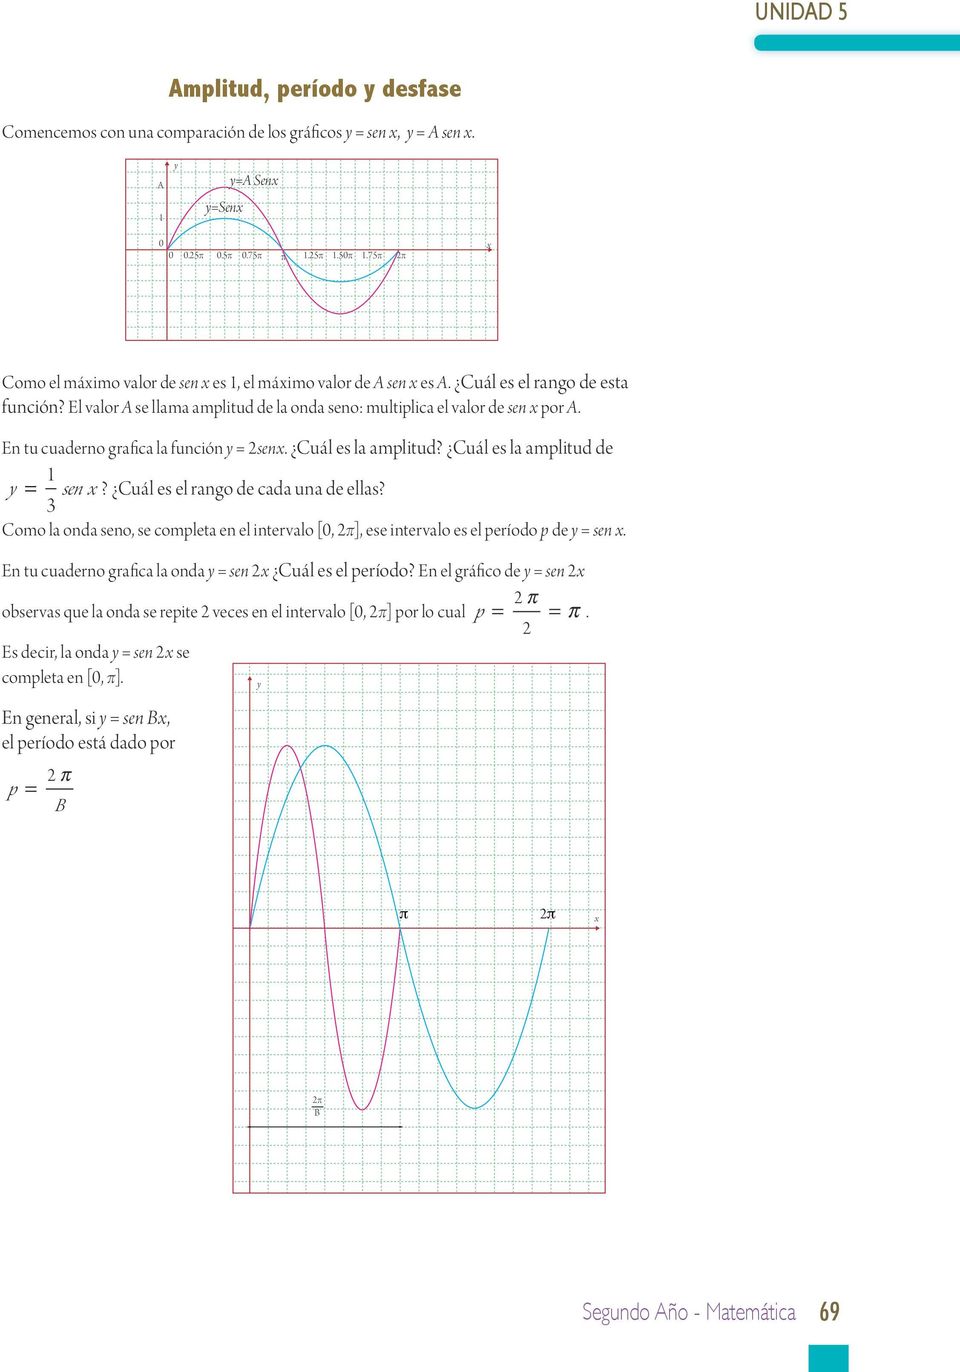 Cuál es la amplitud de = sen? Cuál es el rango de cada una de ellas? Como la onda seno, se completa en el intervalo [, ], ese intervalo es el período p de = sen.